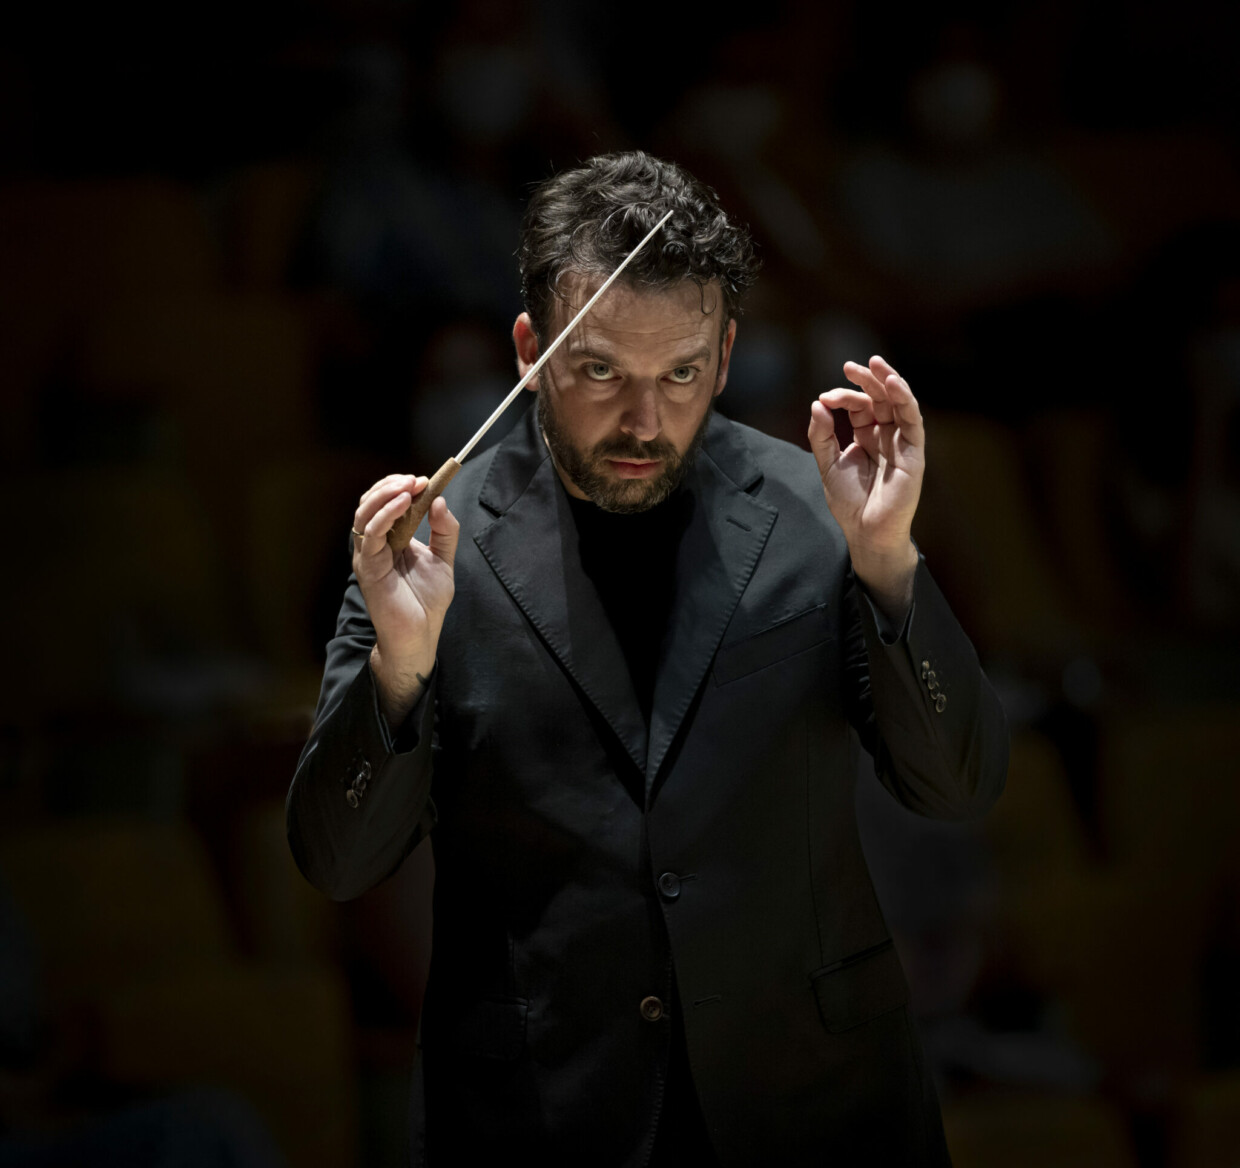 Seit 2011 für Europäische Orchester tätig: James gaffigan